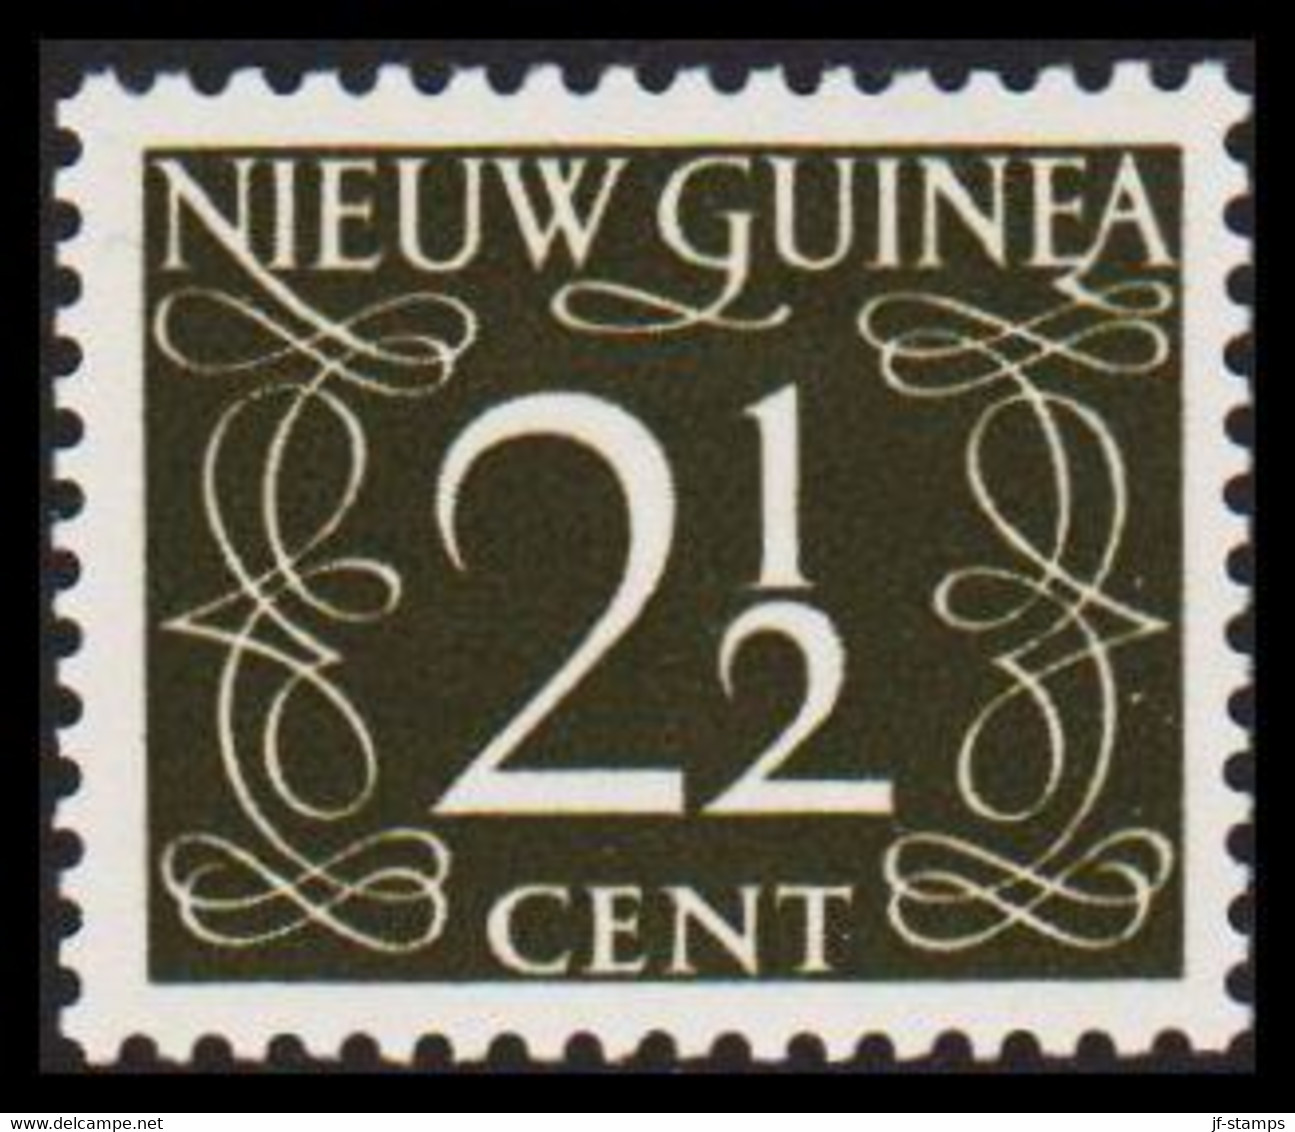 1950. NIEUW GUINEA. Nummerals- Type 2½ CENT Hinged.  - JF529320 - Niederländisch-Neuguinea